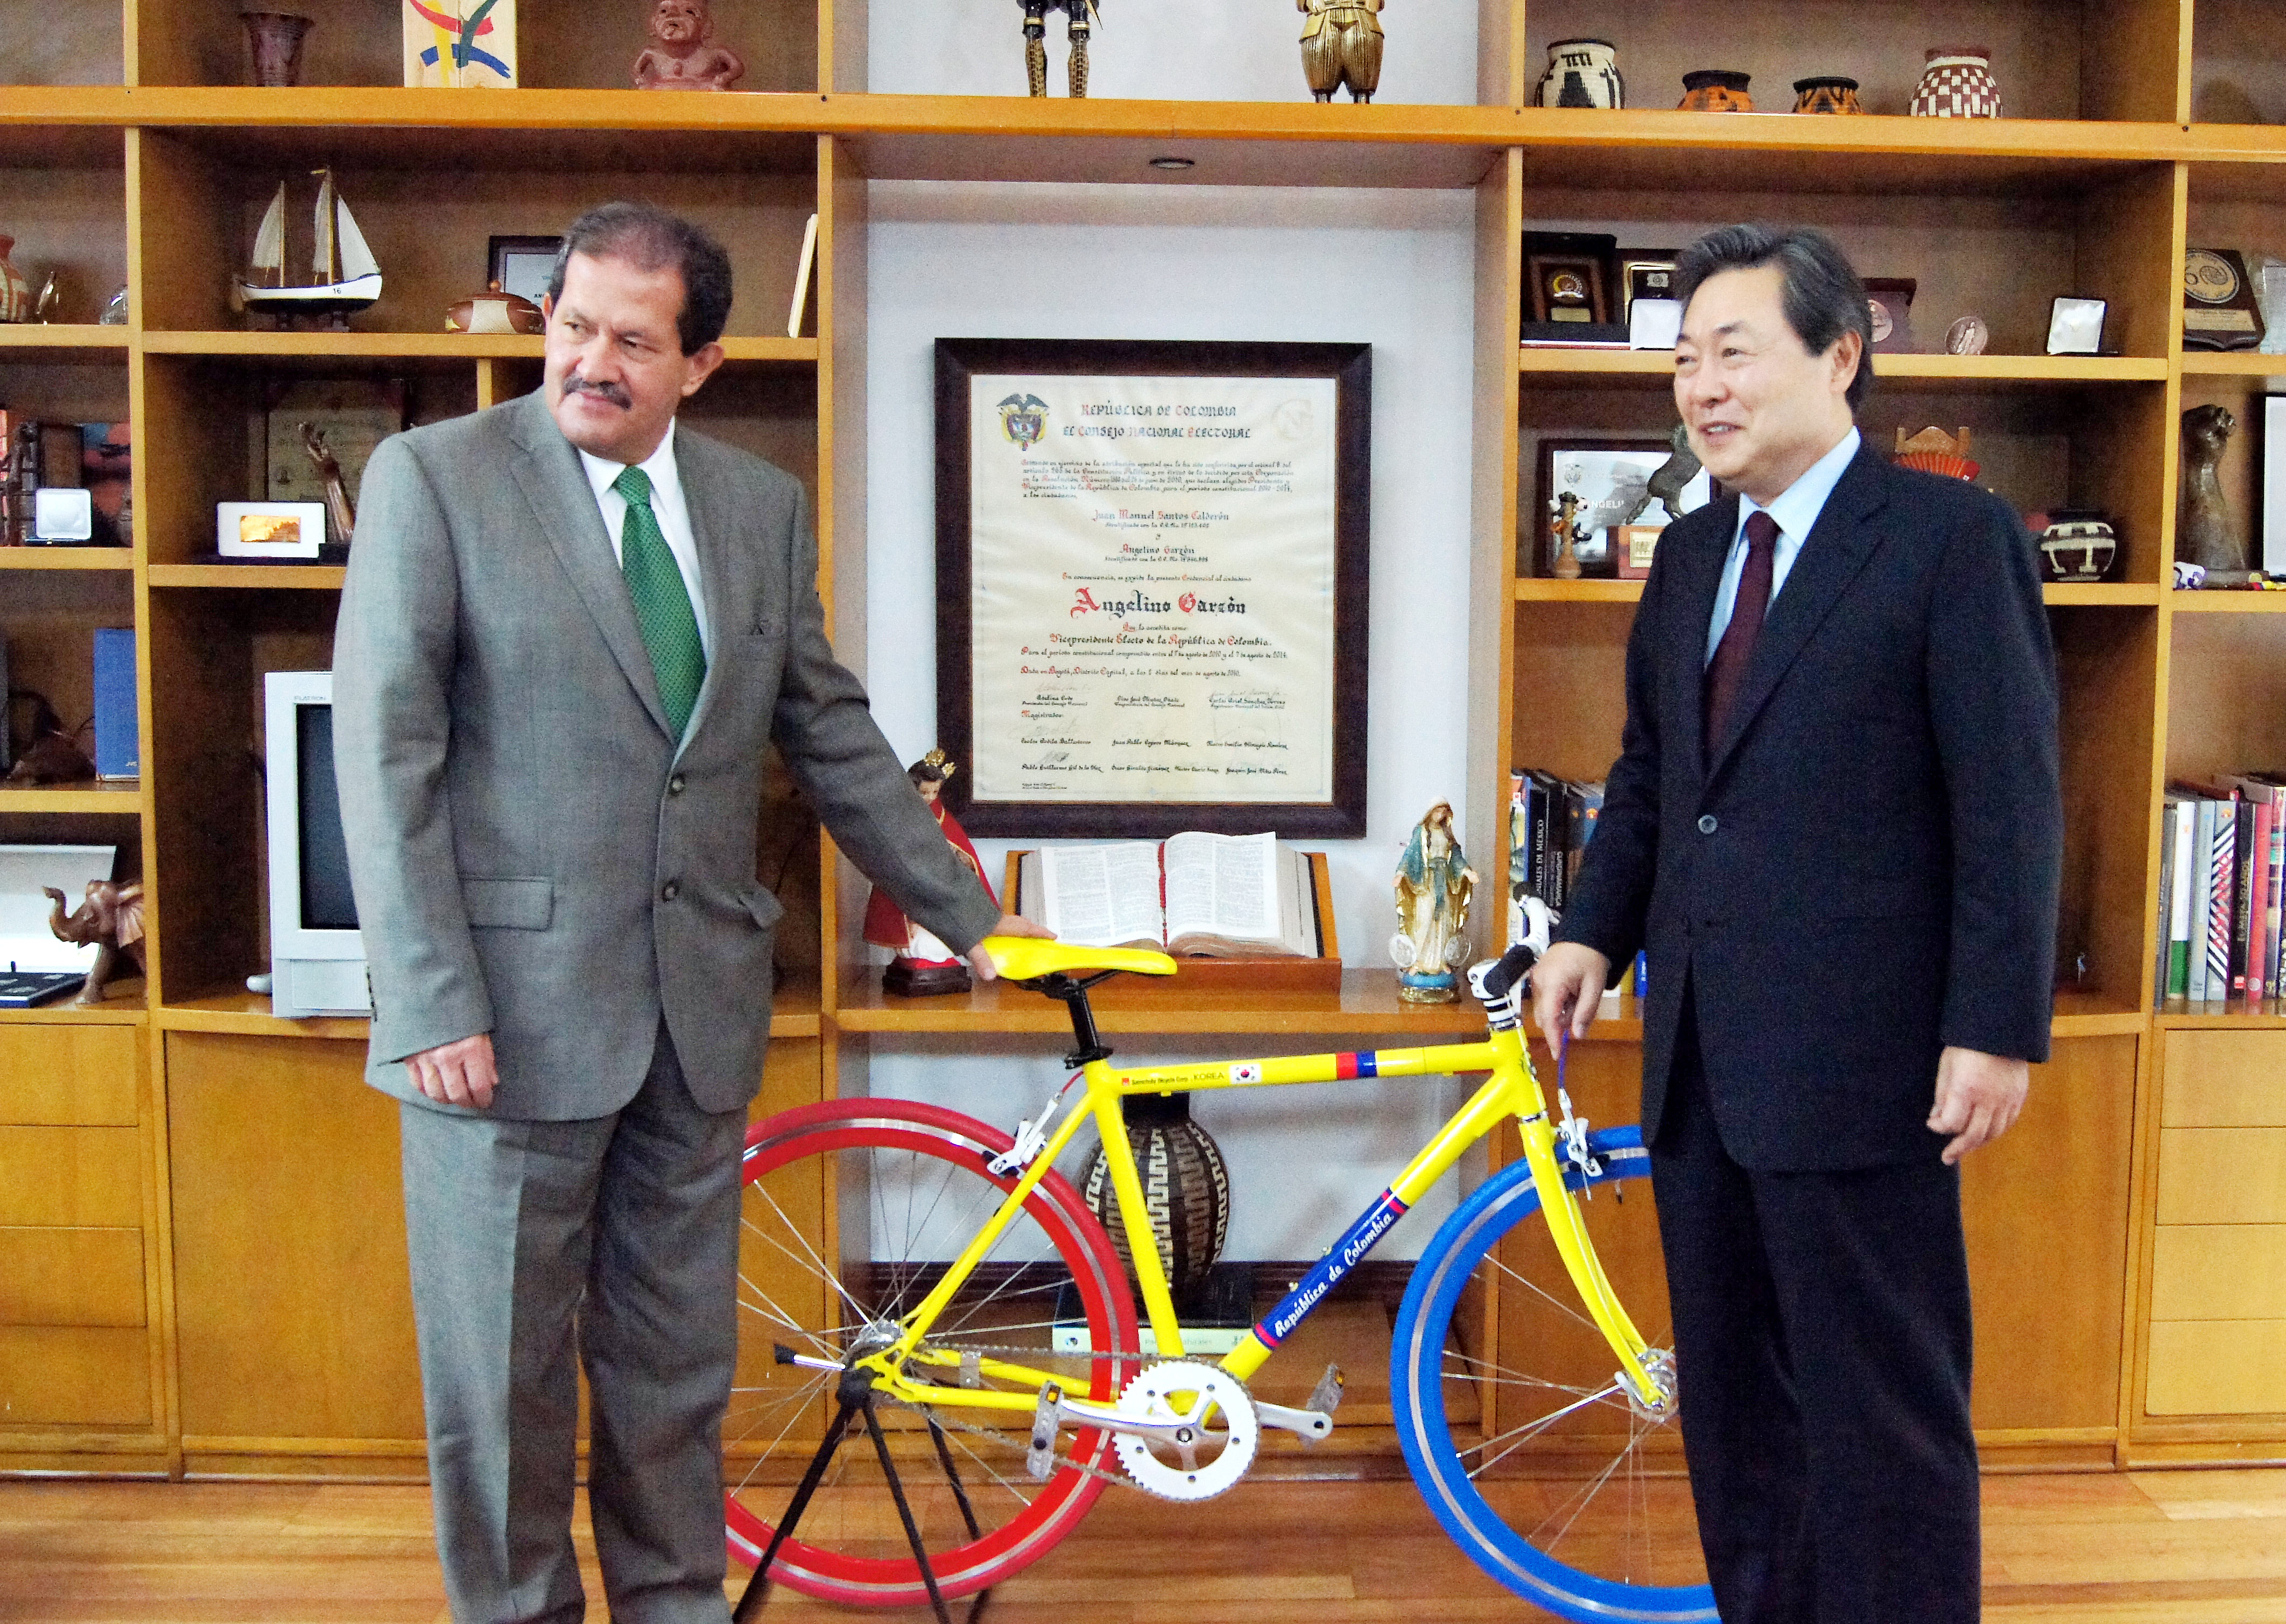 맹형규 장관, '앙헬리노 가르손' 콜롬비아 부통령에게 자전거 선물